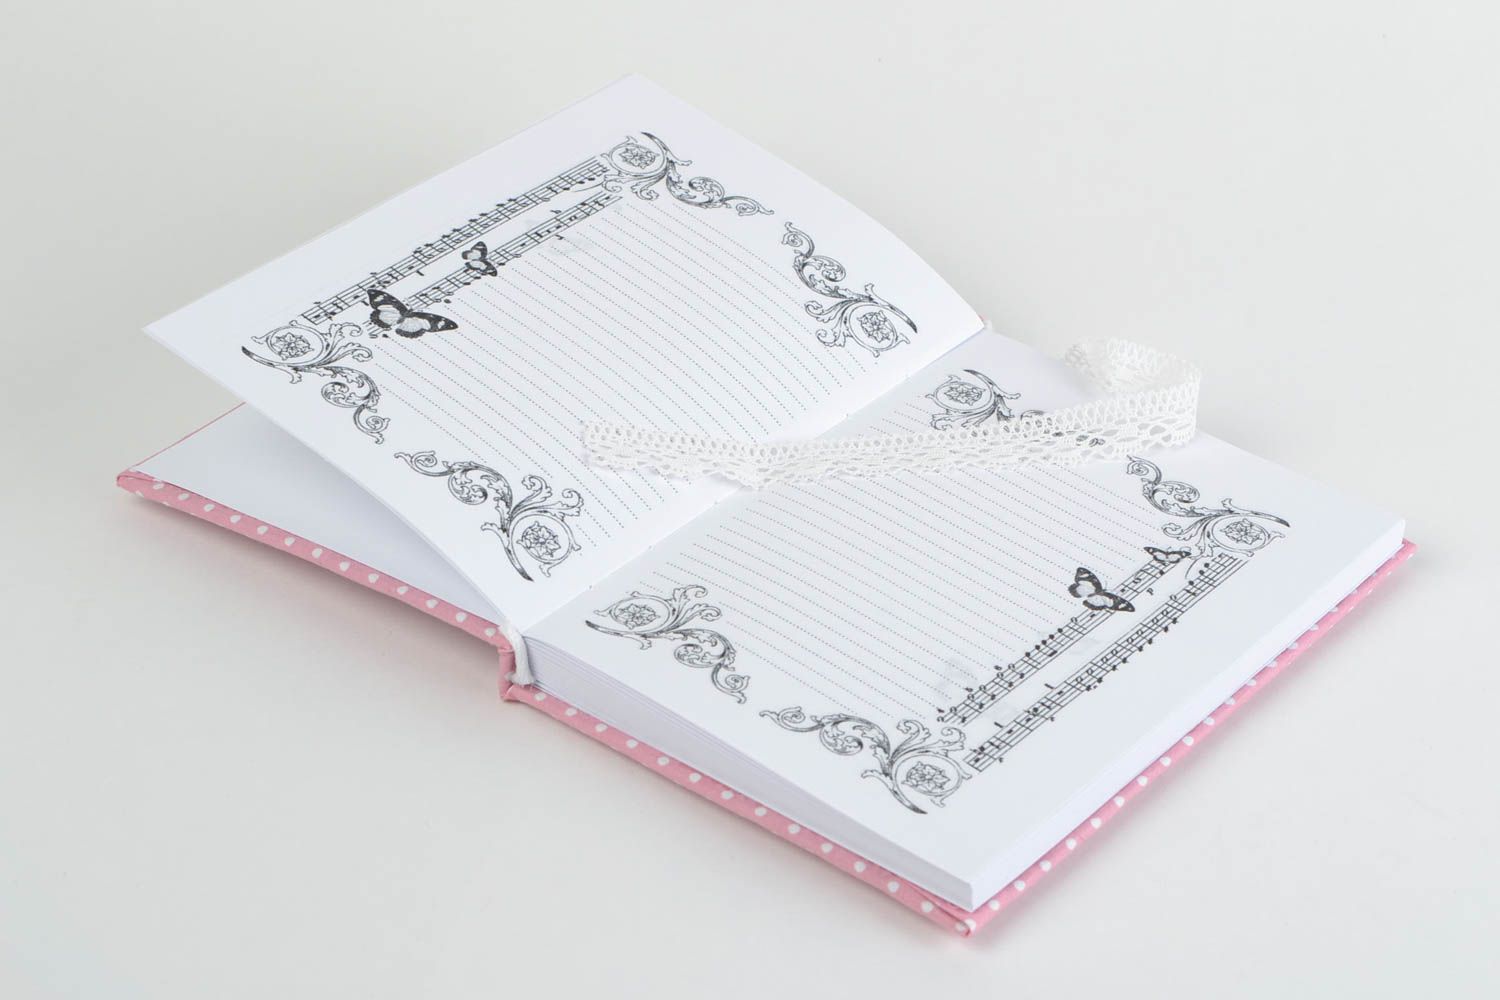 Скрап блокнот ручной работы в тканевой обложке для девушки розовый романтический фото 3